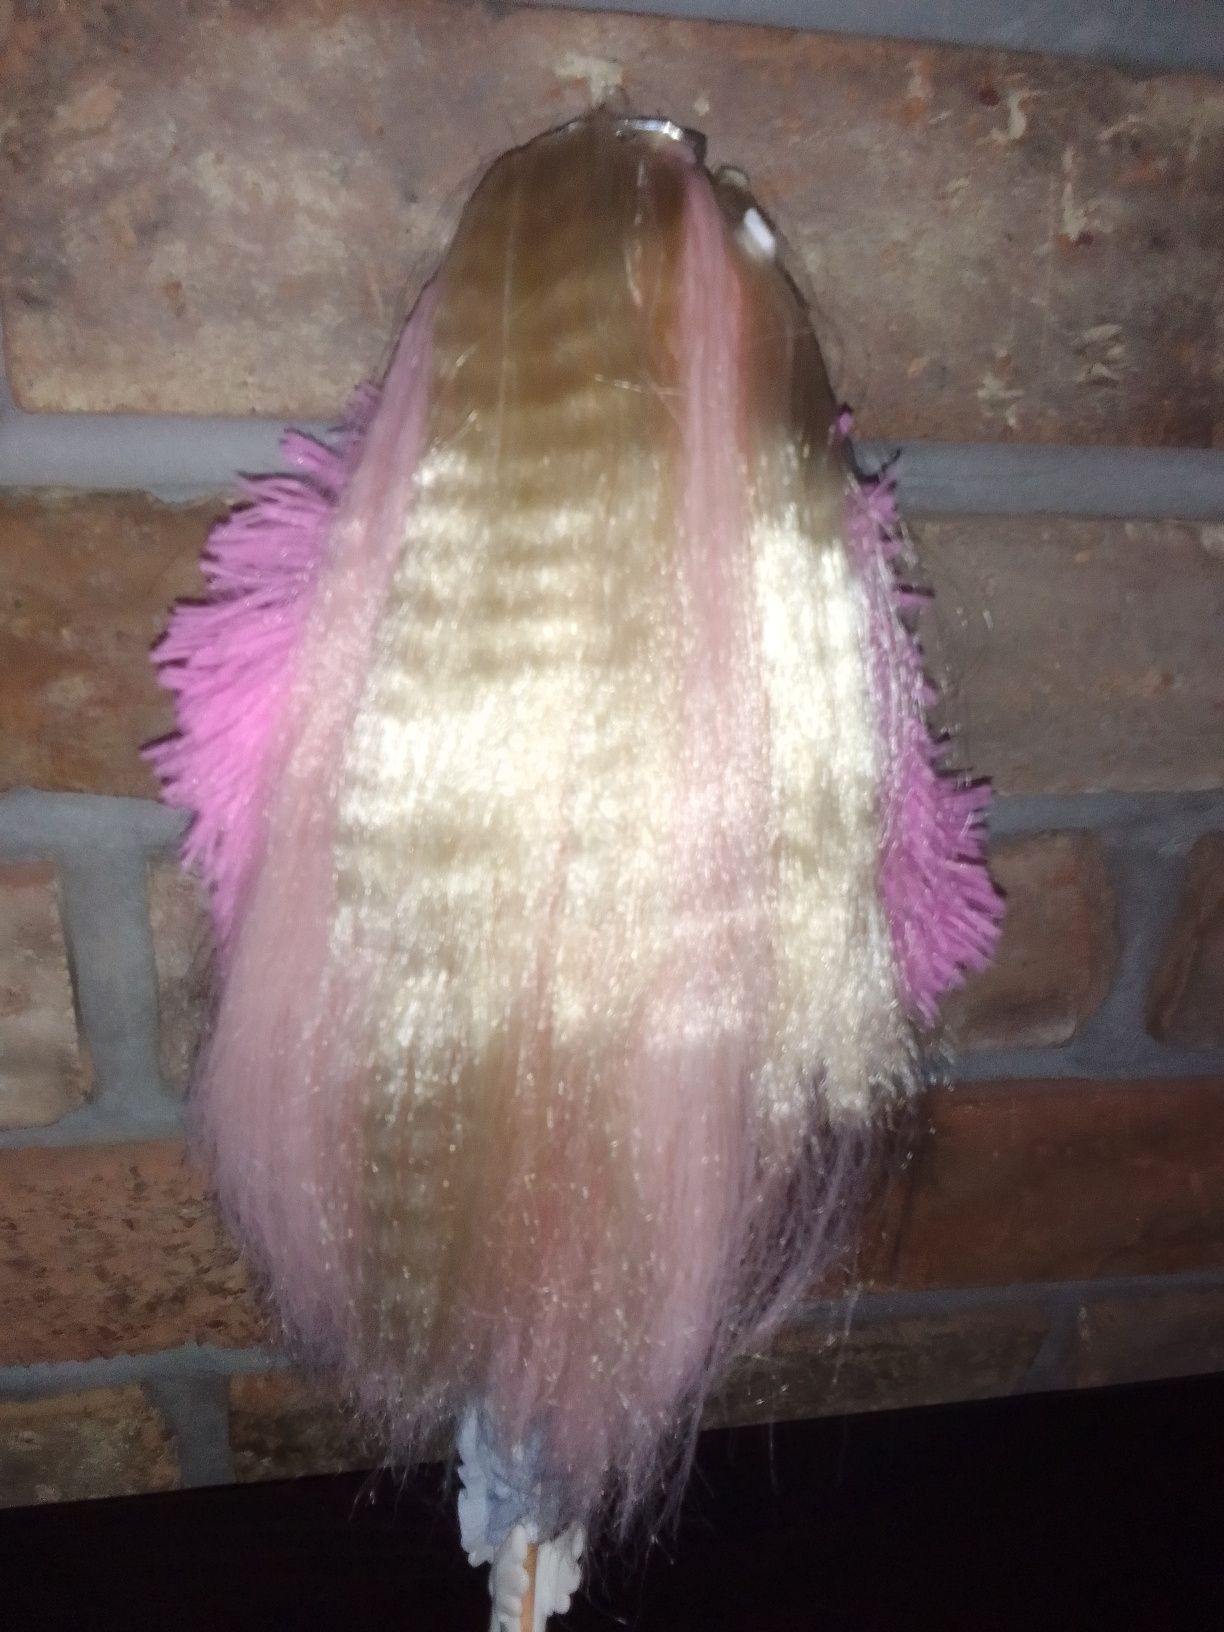 Barbie Extra akcesoria świnkorożec lalka piękne włosy